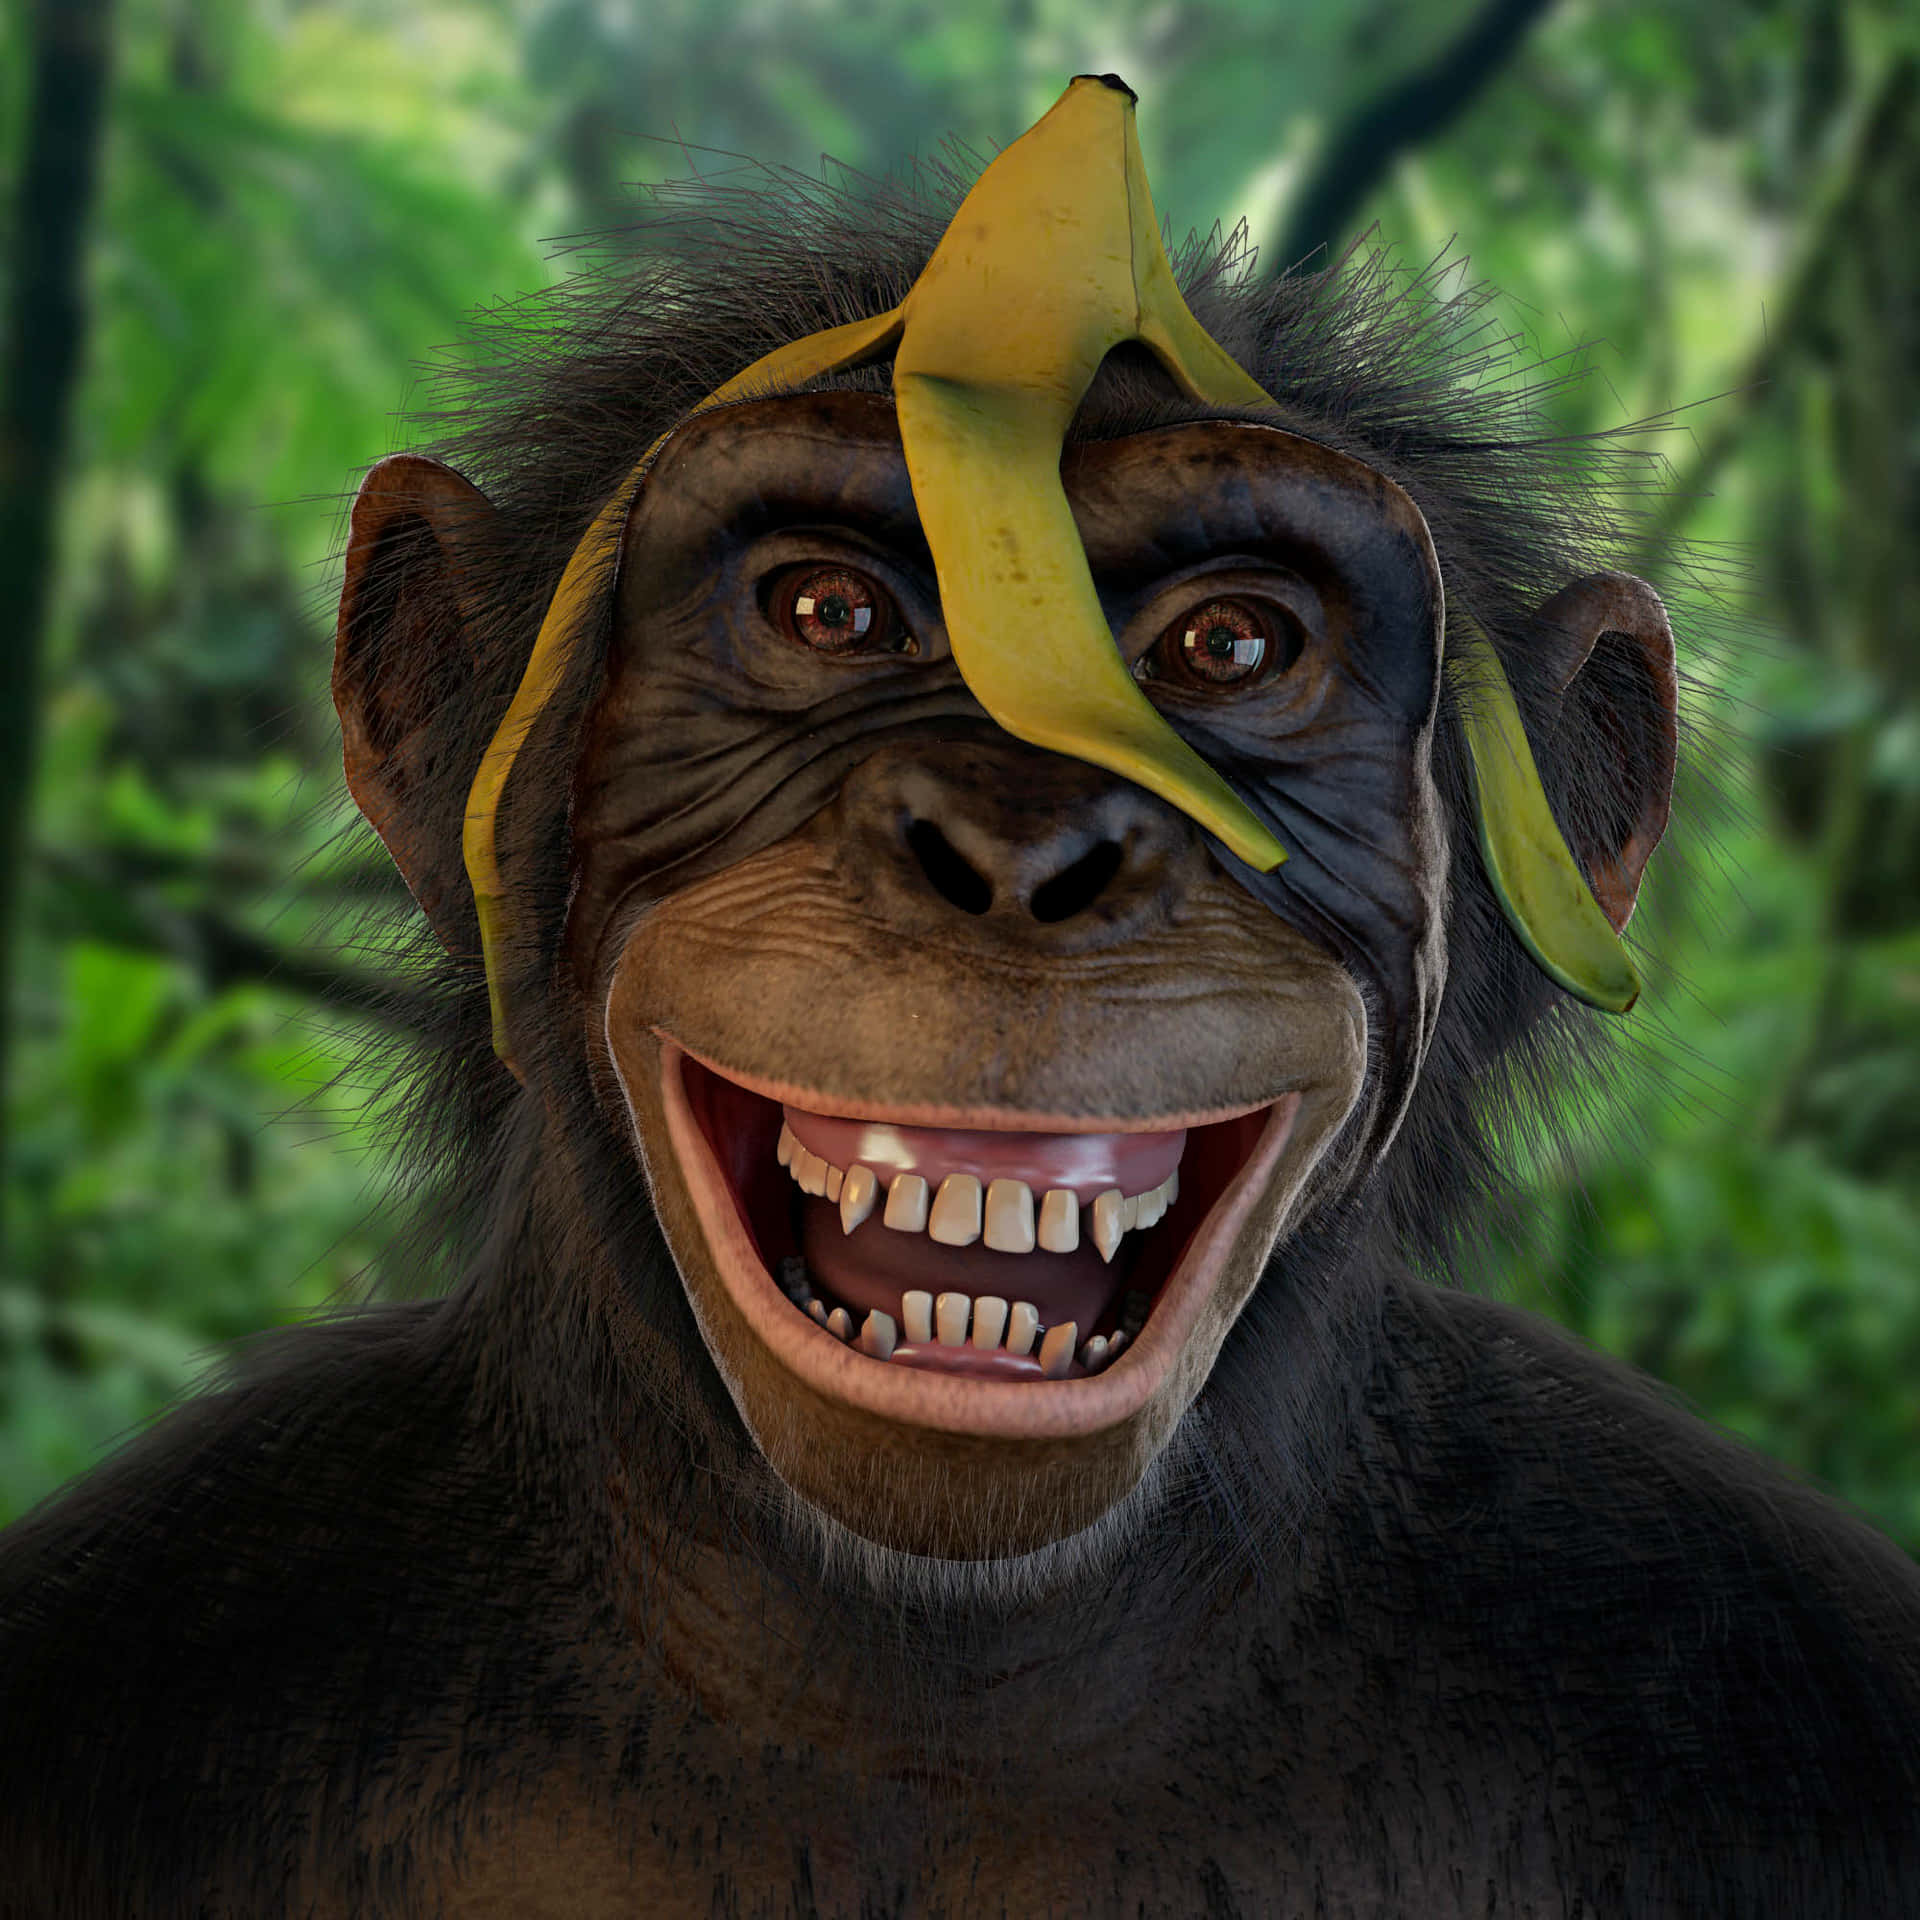 Chimpanzee Banana Black Monkey Picture